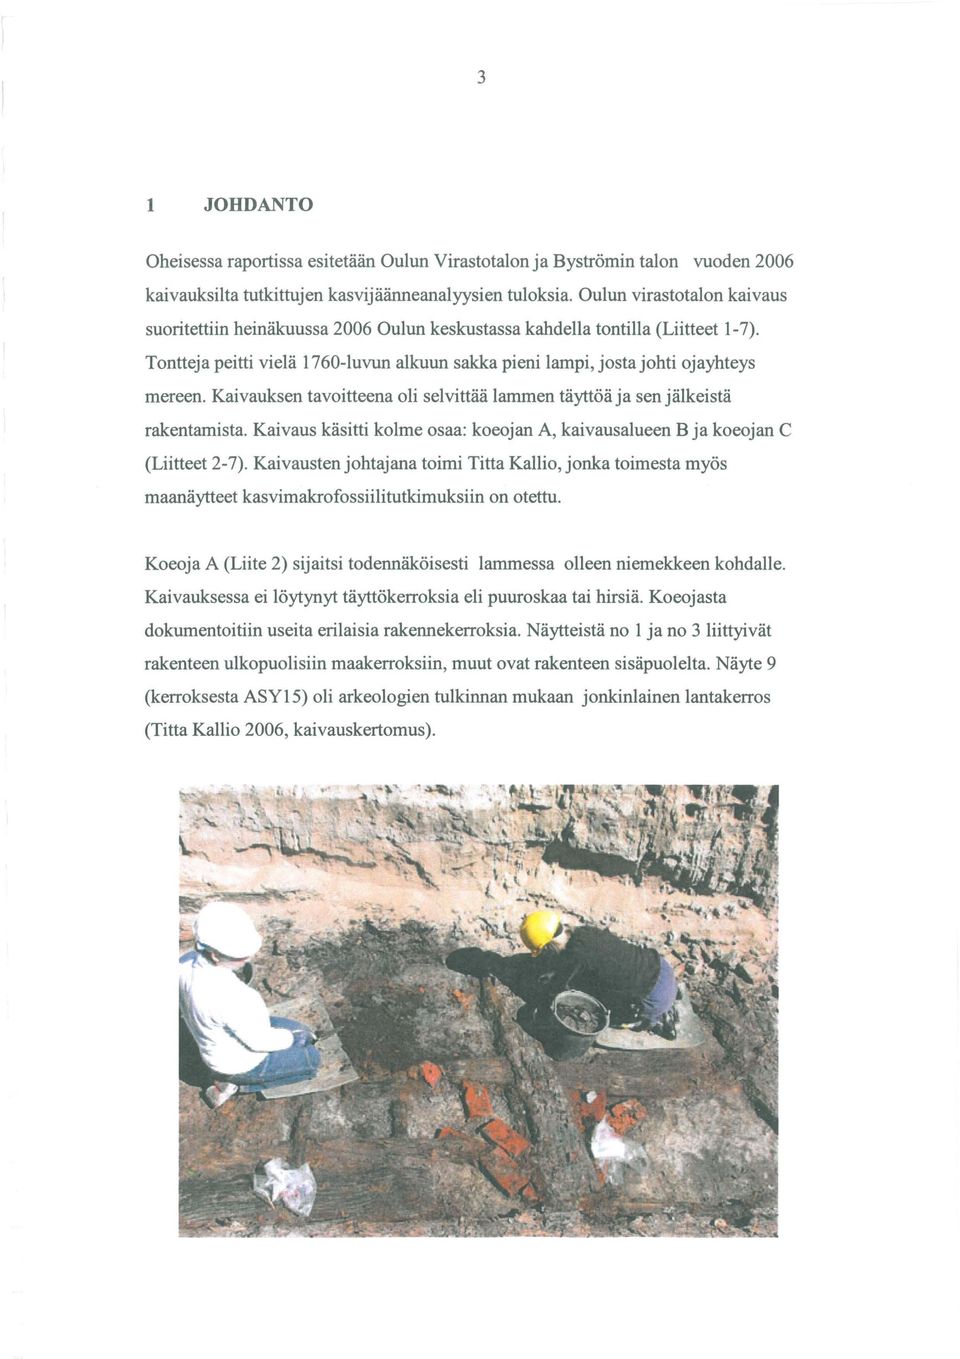 Kaivauksen tavoitteena oli selvittää lammen täyttöä ja sen jälkeistä rakentamista. Kaivaus käsitti kolme osaa: koeojan A, kaivausalueen B ja koeojan C (Liitteet 2-7).